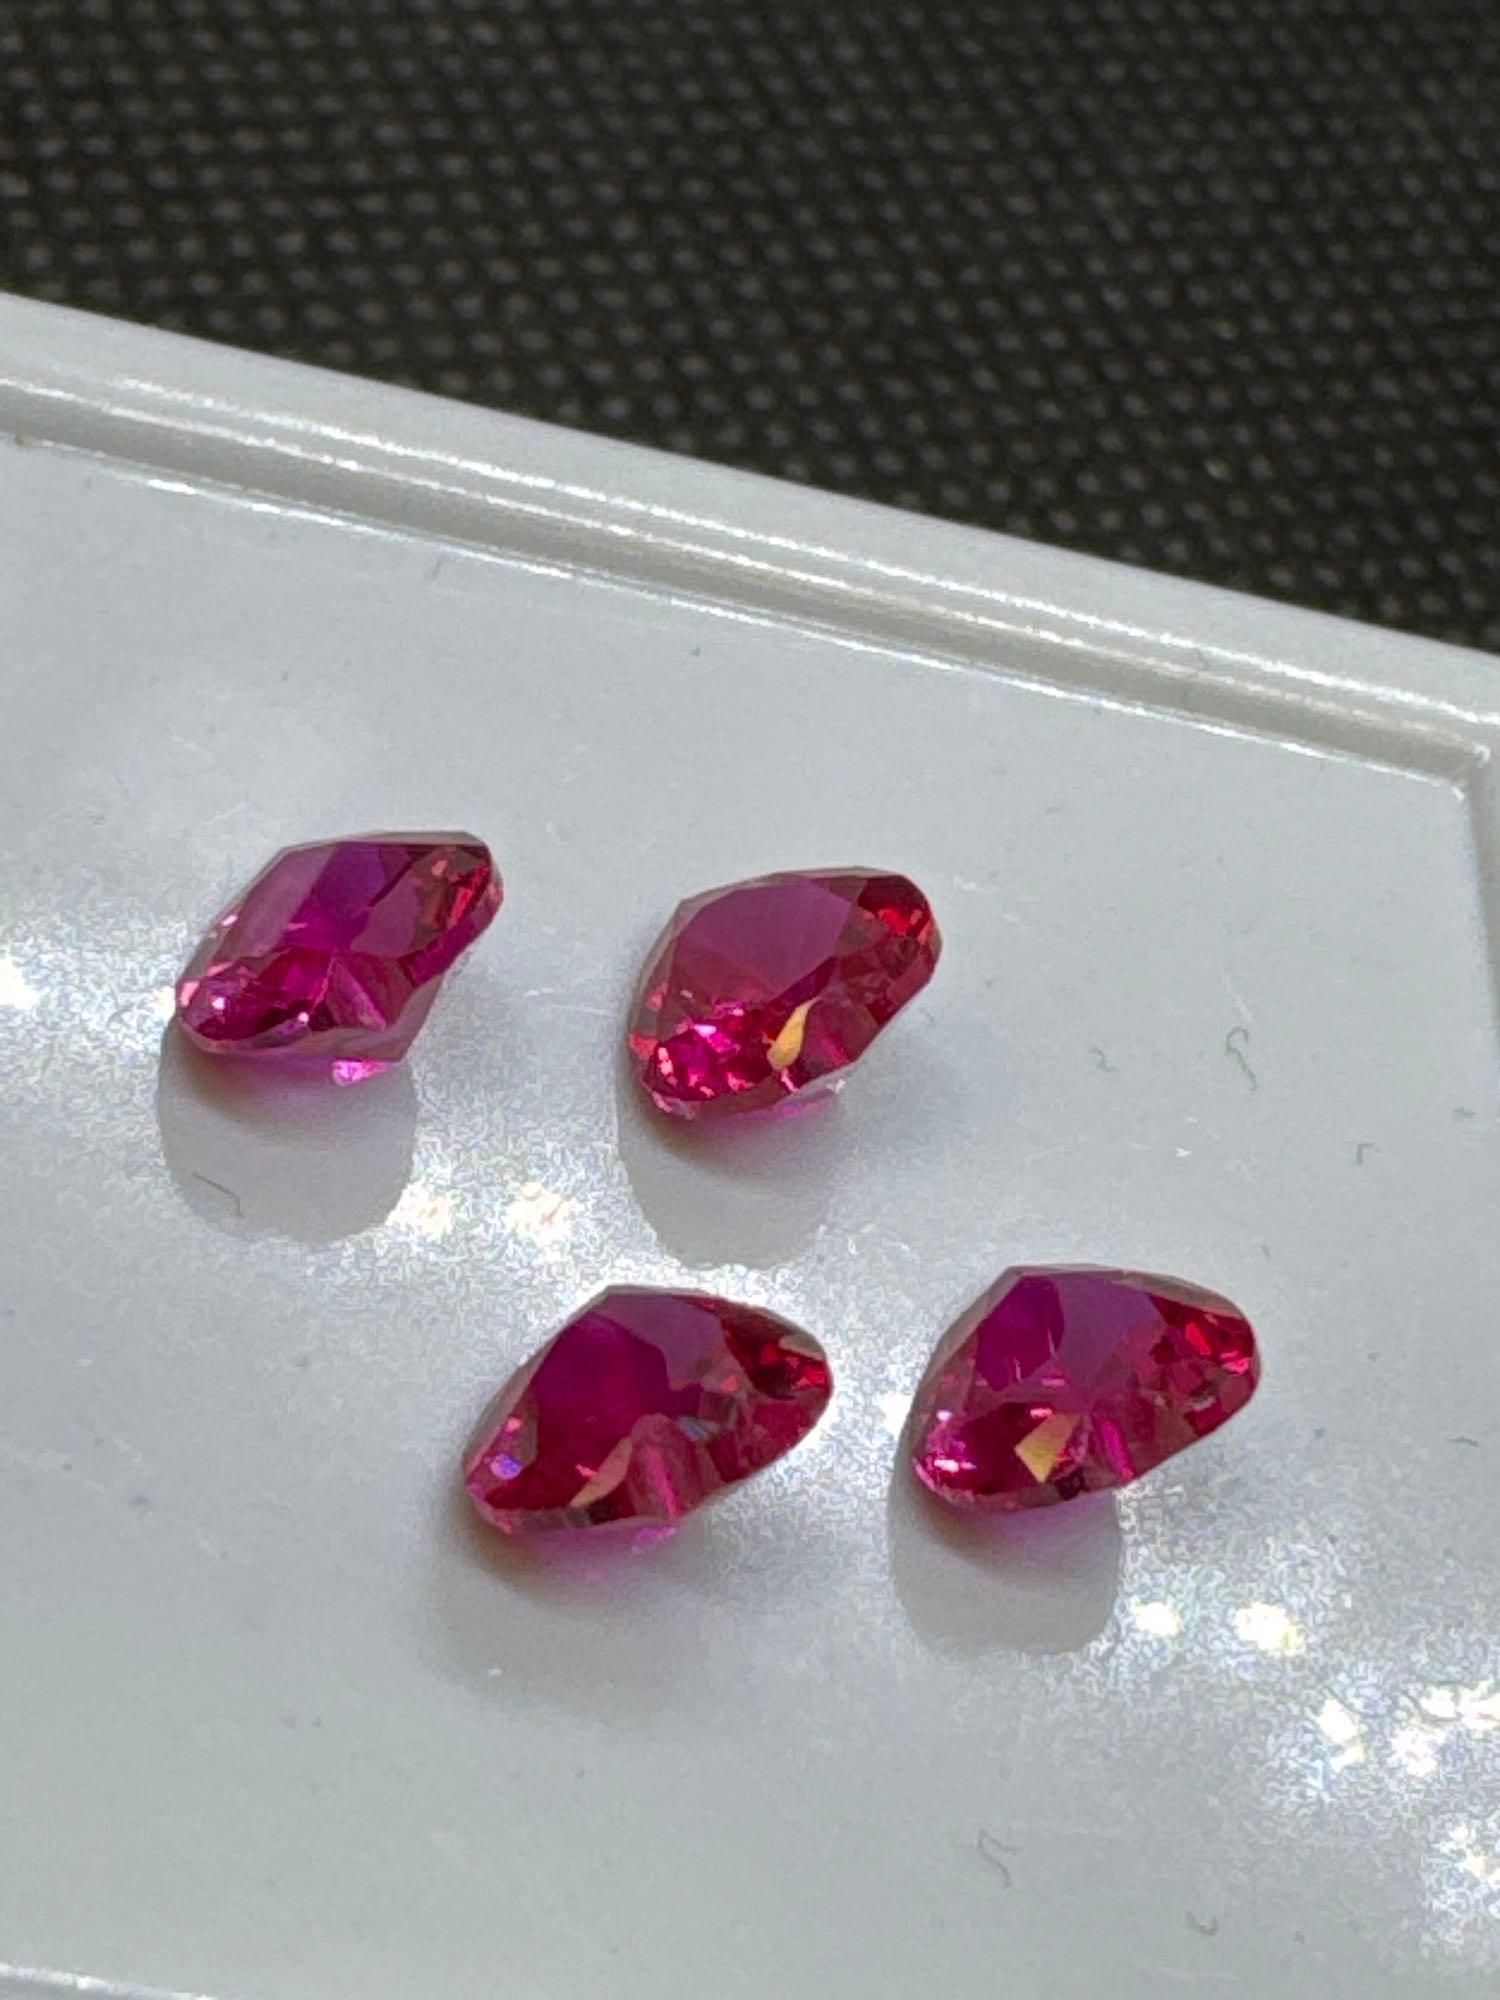 4x Red Heart Cut Ruby Gemstones 3.75Ct